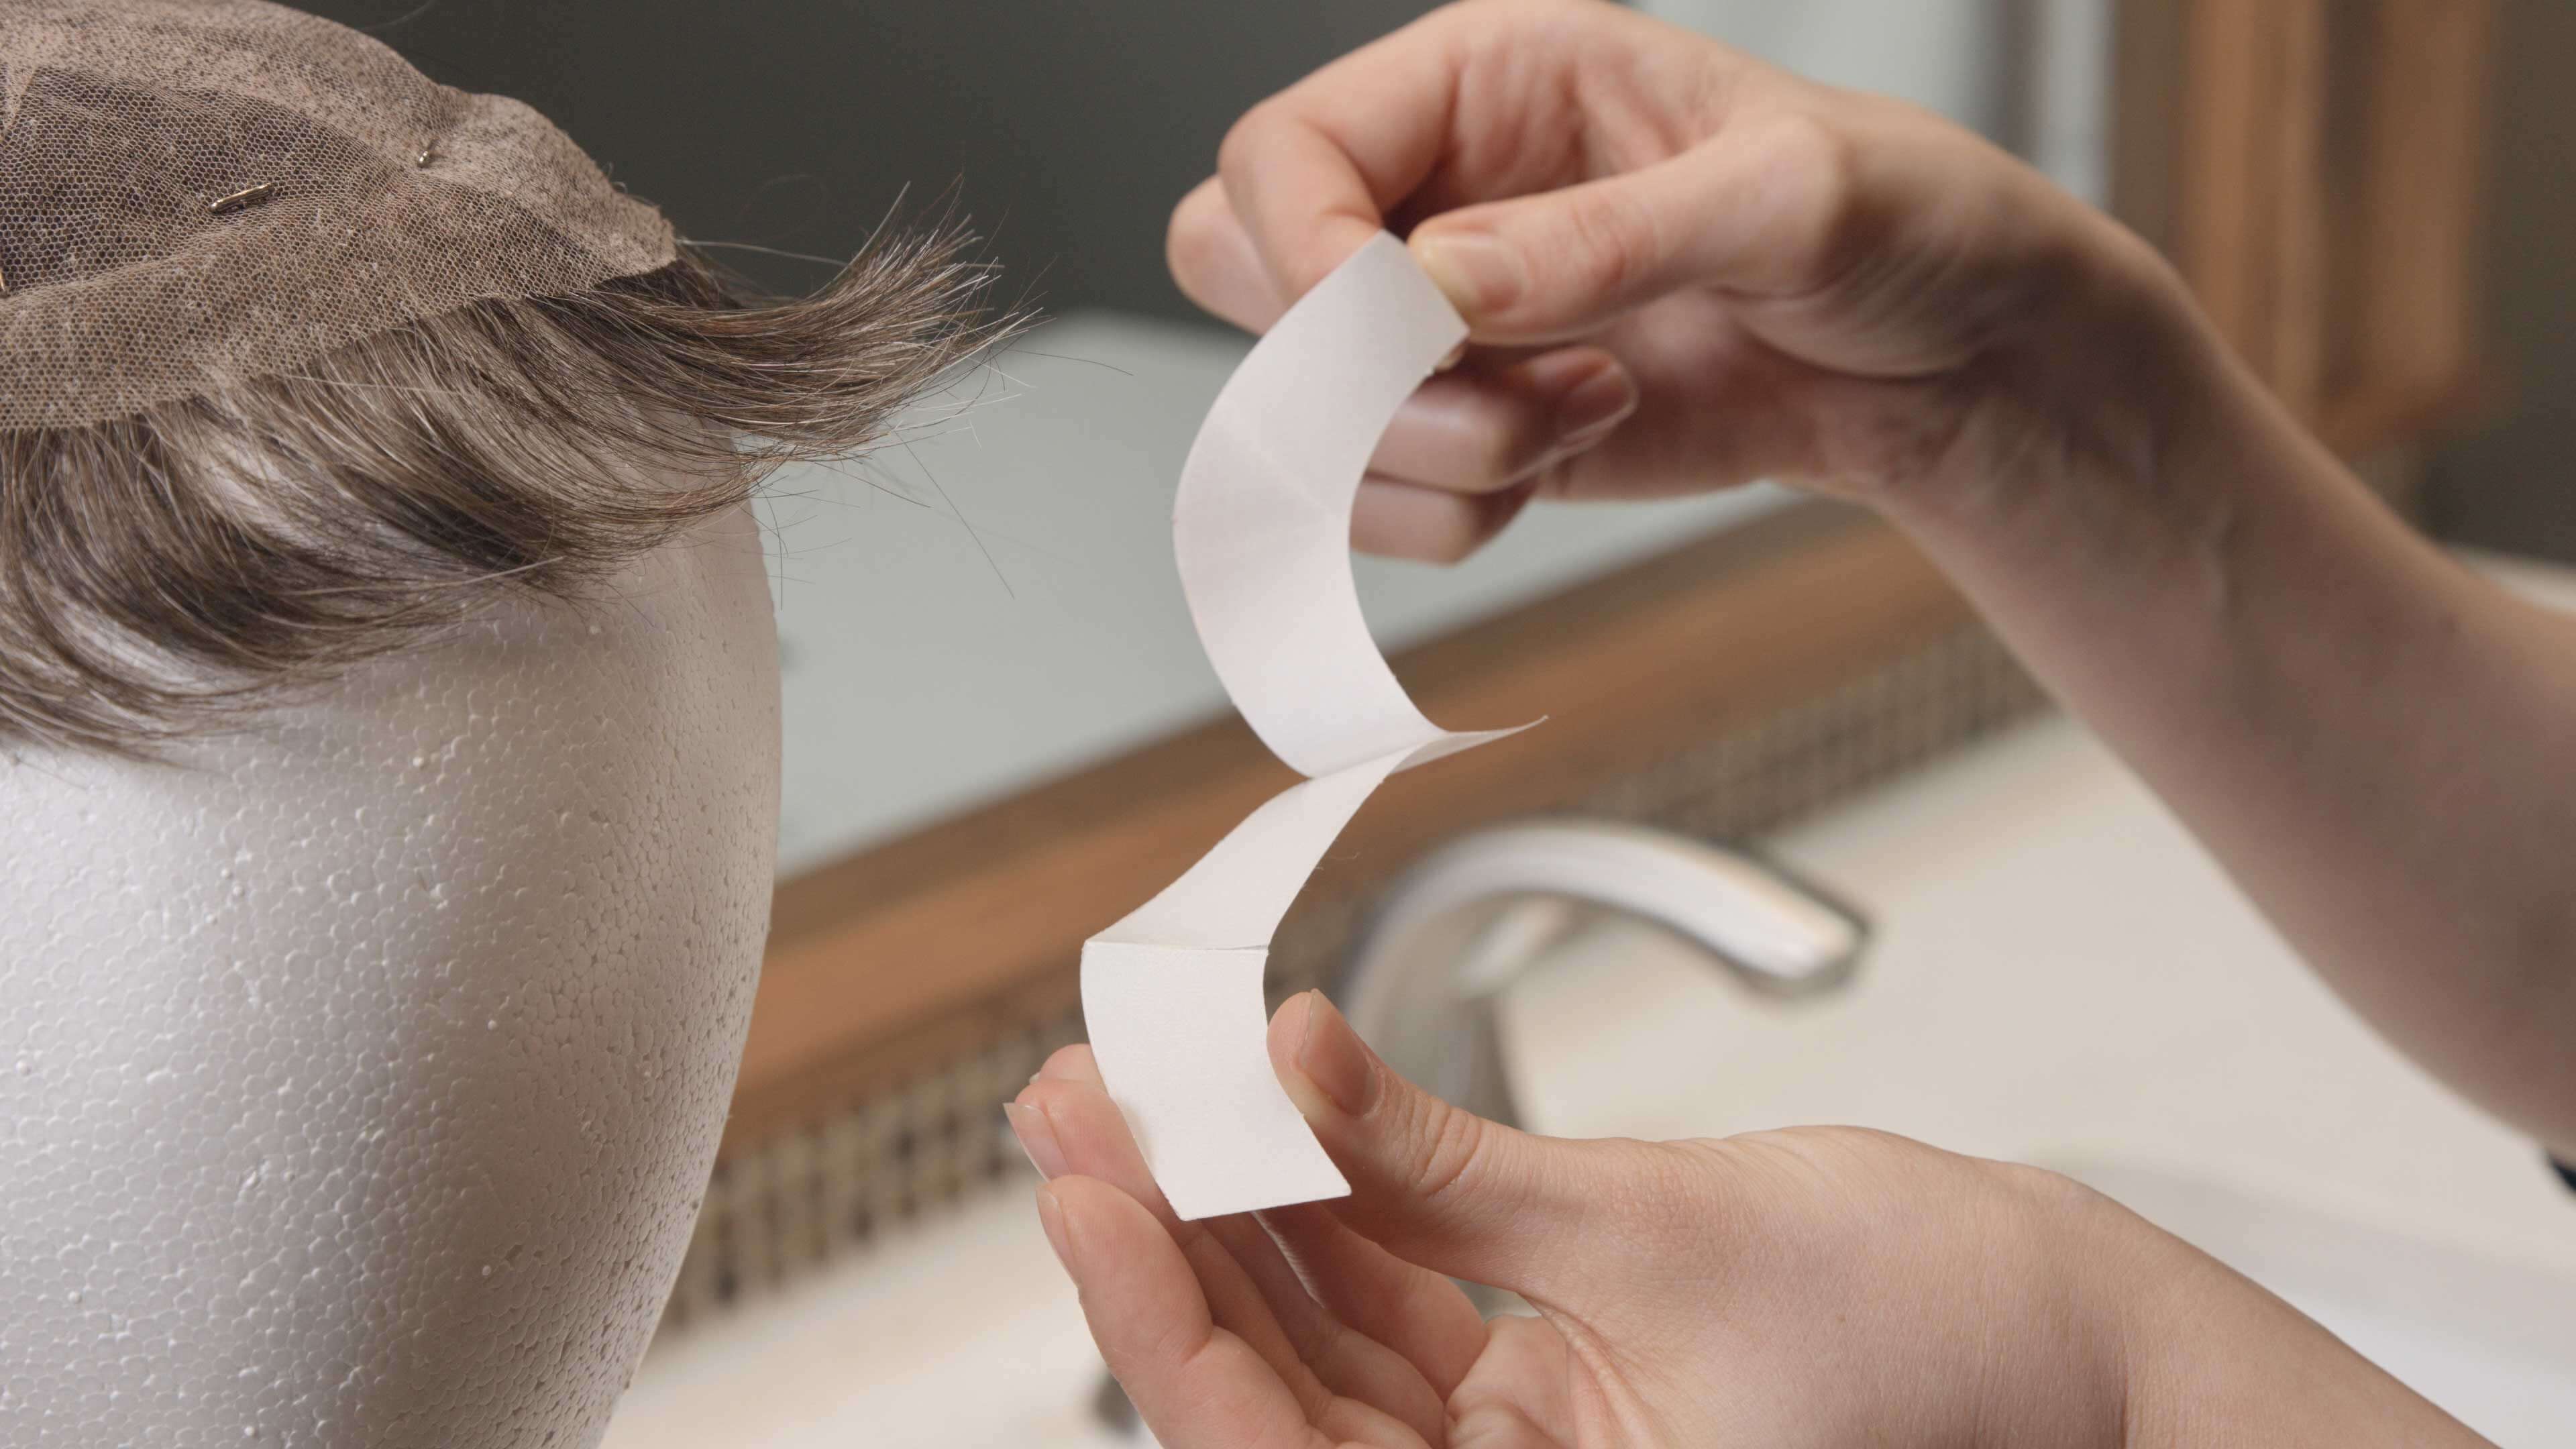 Protez Saç Bantları Temzileme 1. Adım | Protez Saçlar nasıl temizlenir?